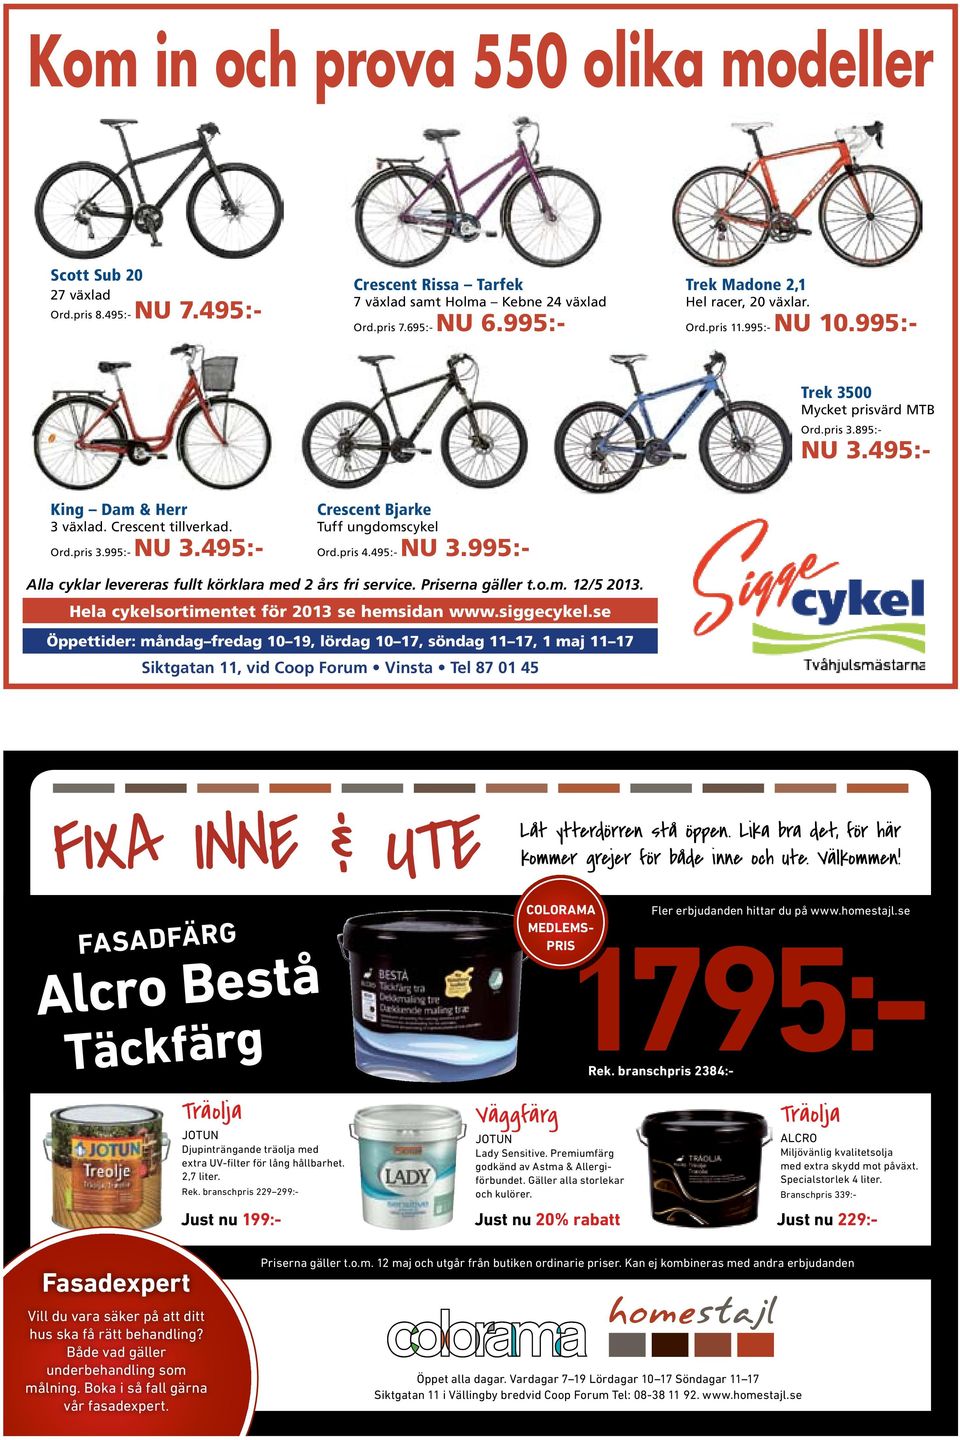 495:- Crescent Bjarke Tuff ungdomscykel Ord.pris 4.495:- NU 3.995:- Alla cyklar levereras fullt körklara med 2 års fri service. Priserna gäller t.o.m. 12/5 2013.